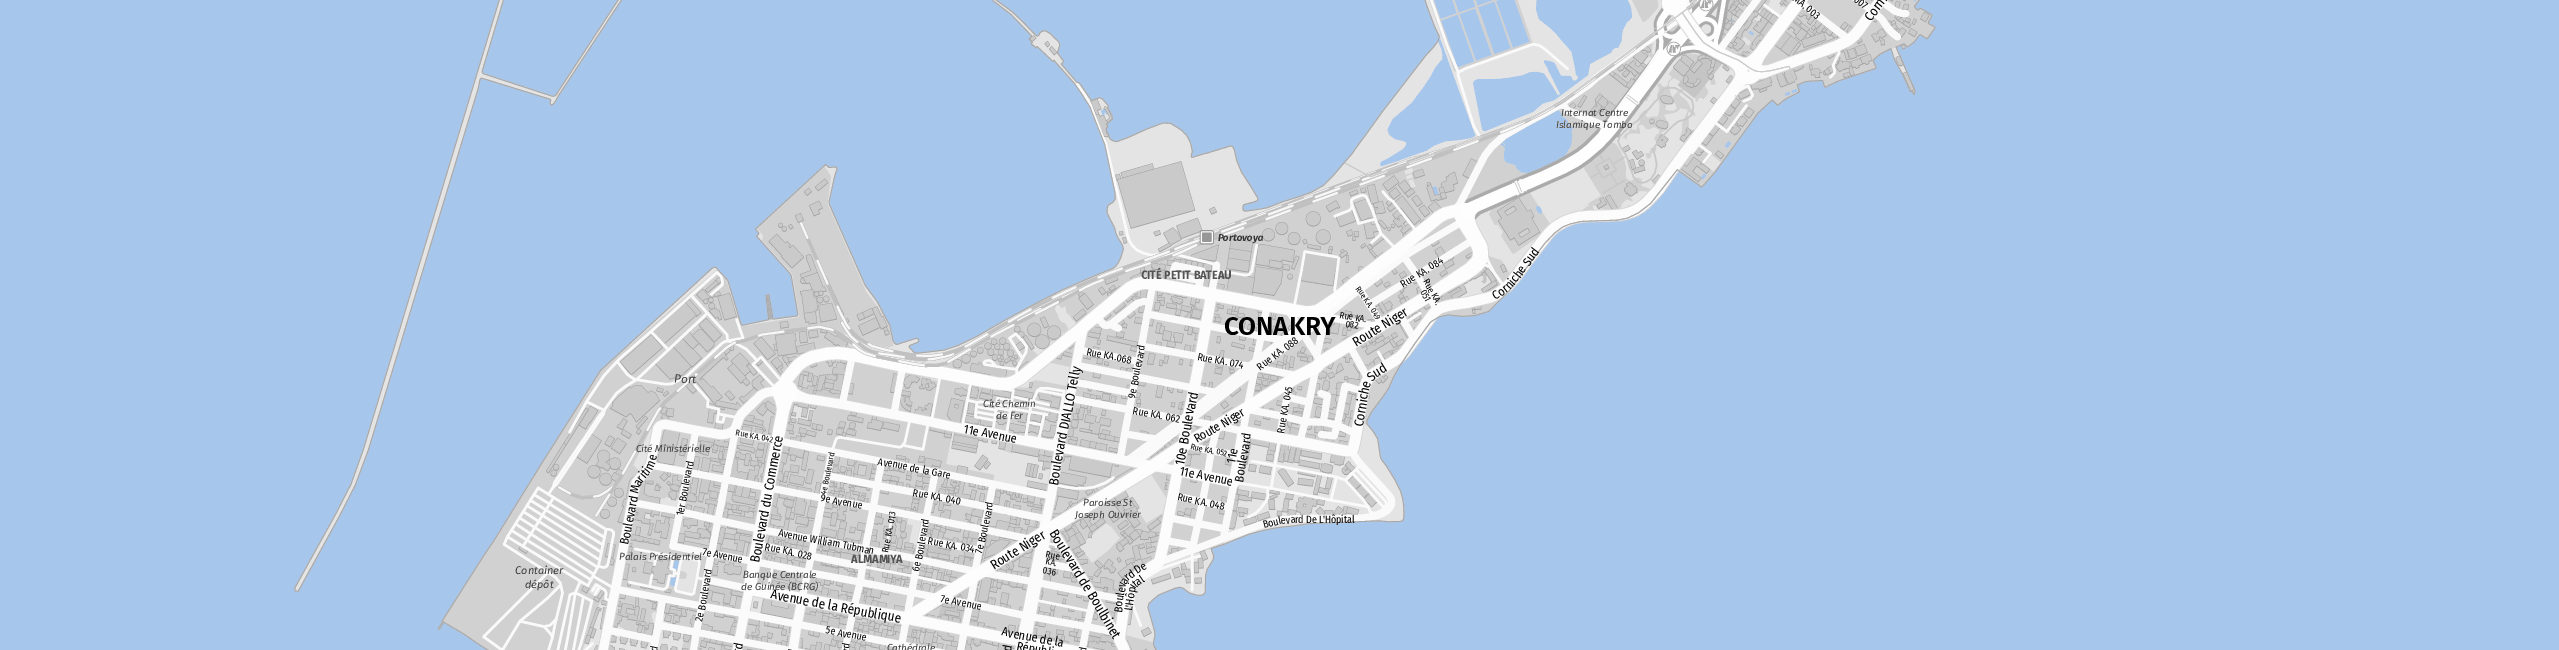 Stadtplan Conakry zum Downloaden.